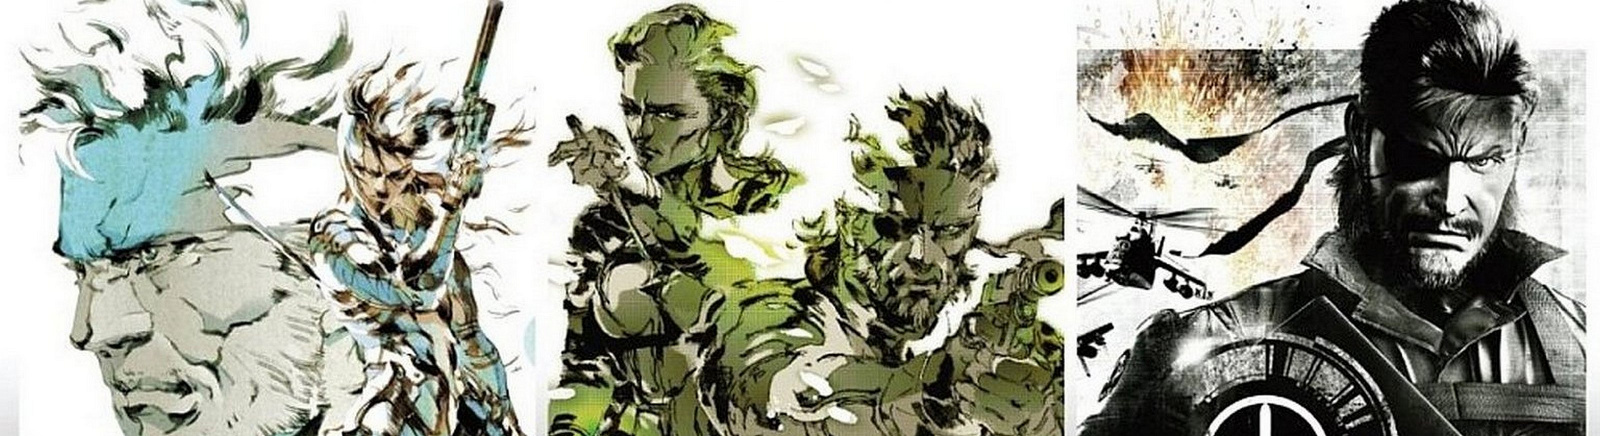 Дата выхода Metal Gear Solid HD Collection  на PS3, Xbox 360 и PS Vita в России и во всем мире